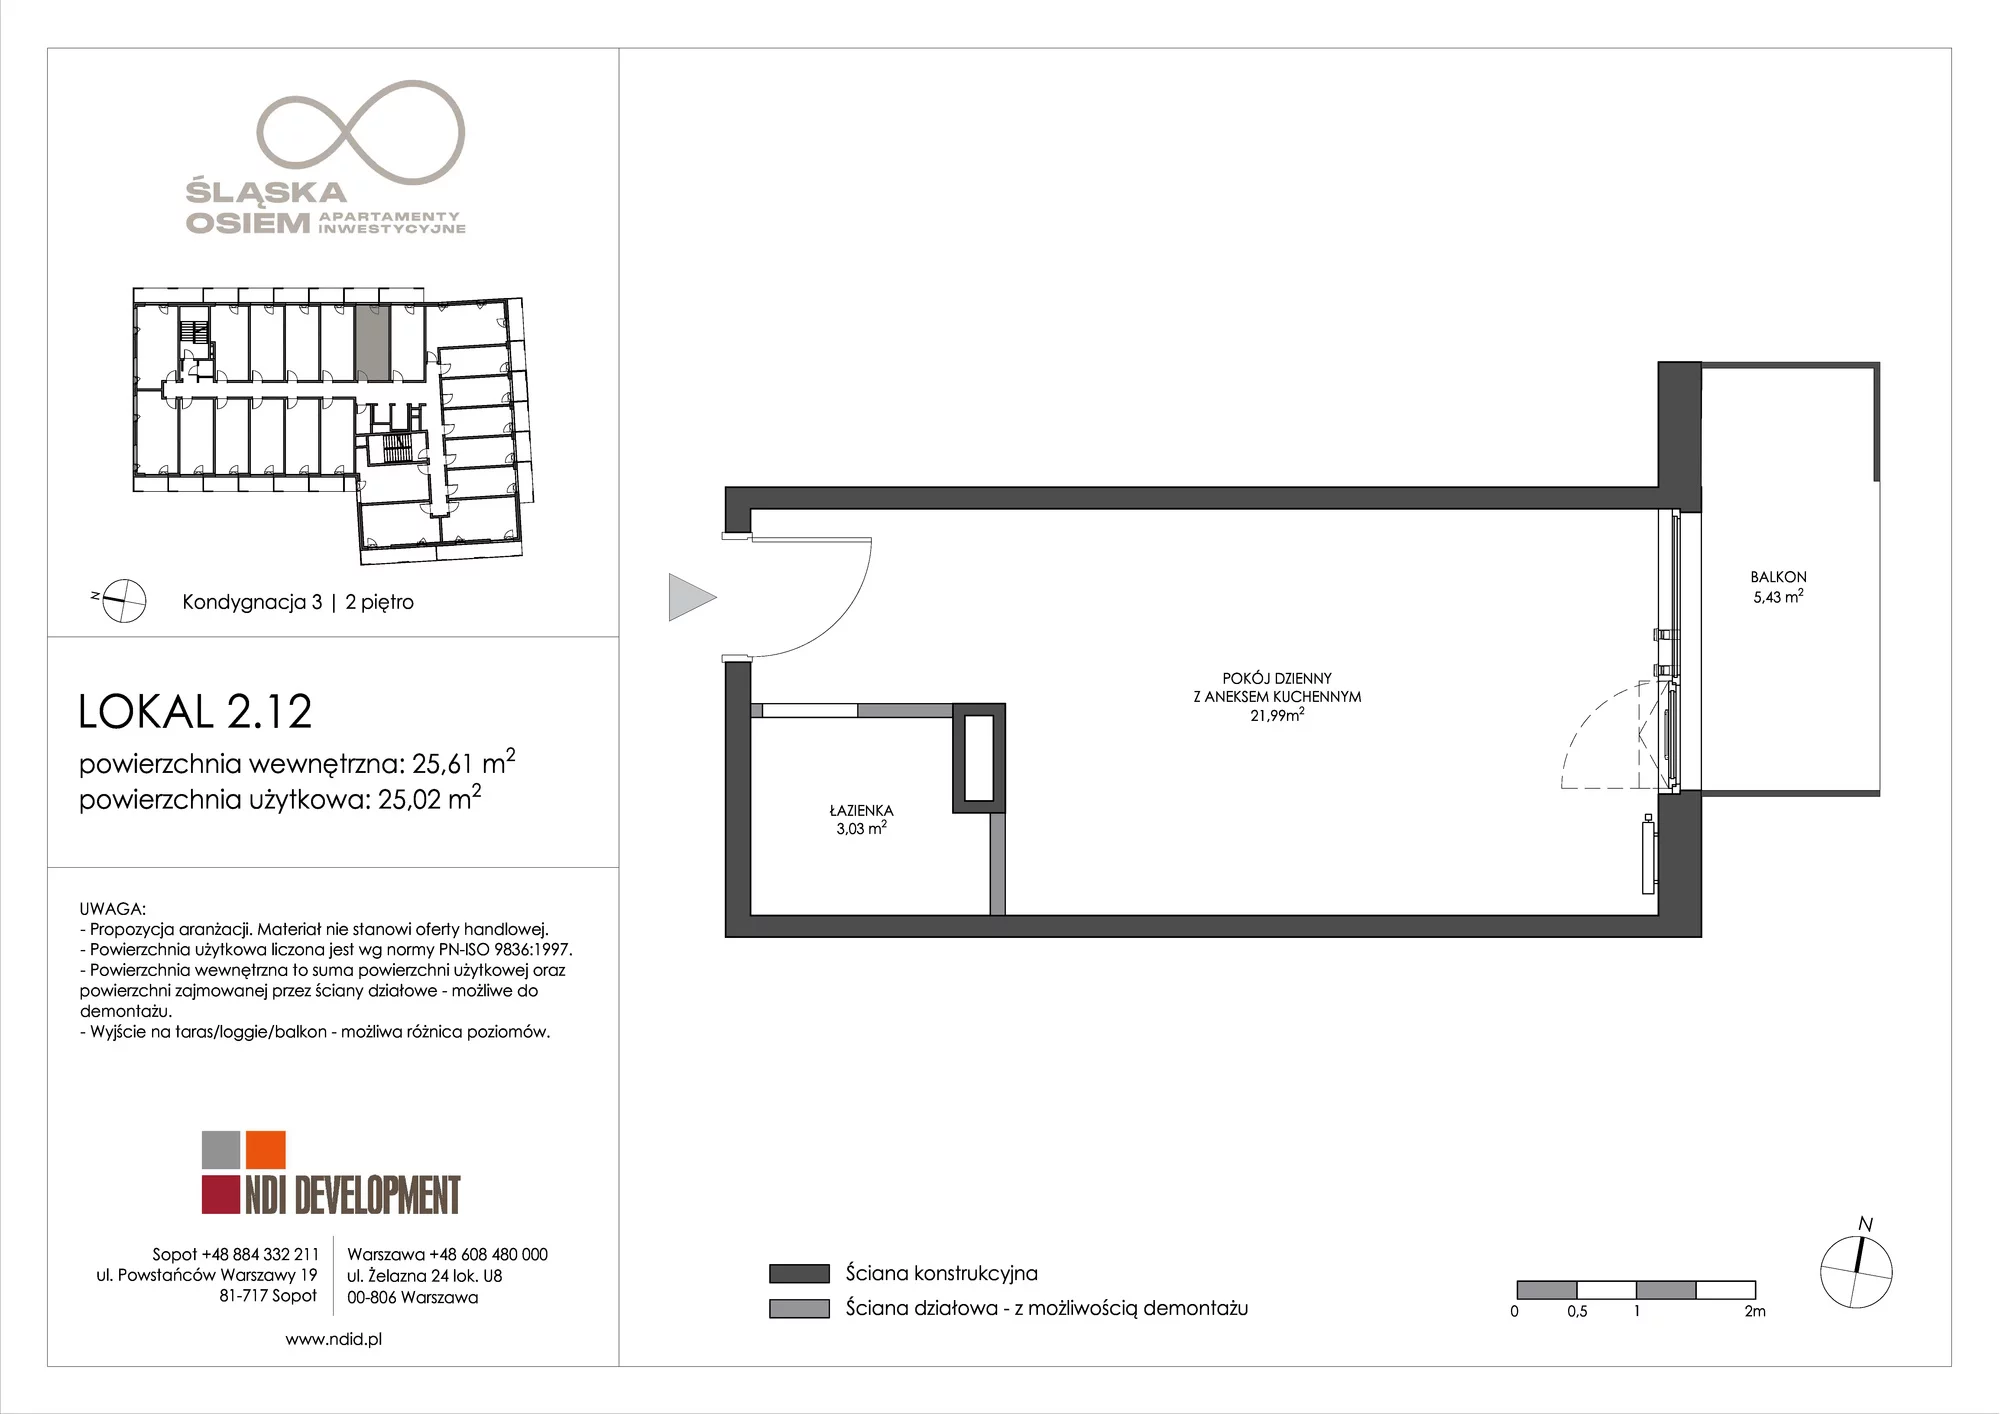 Apartament inwestycyjny 25,61 m², piętro 2, oferta nr 2.12, Śląska Osiem, Gdańsk, Przymorze, ul. Śląska 8